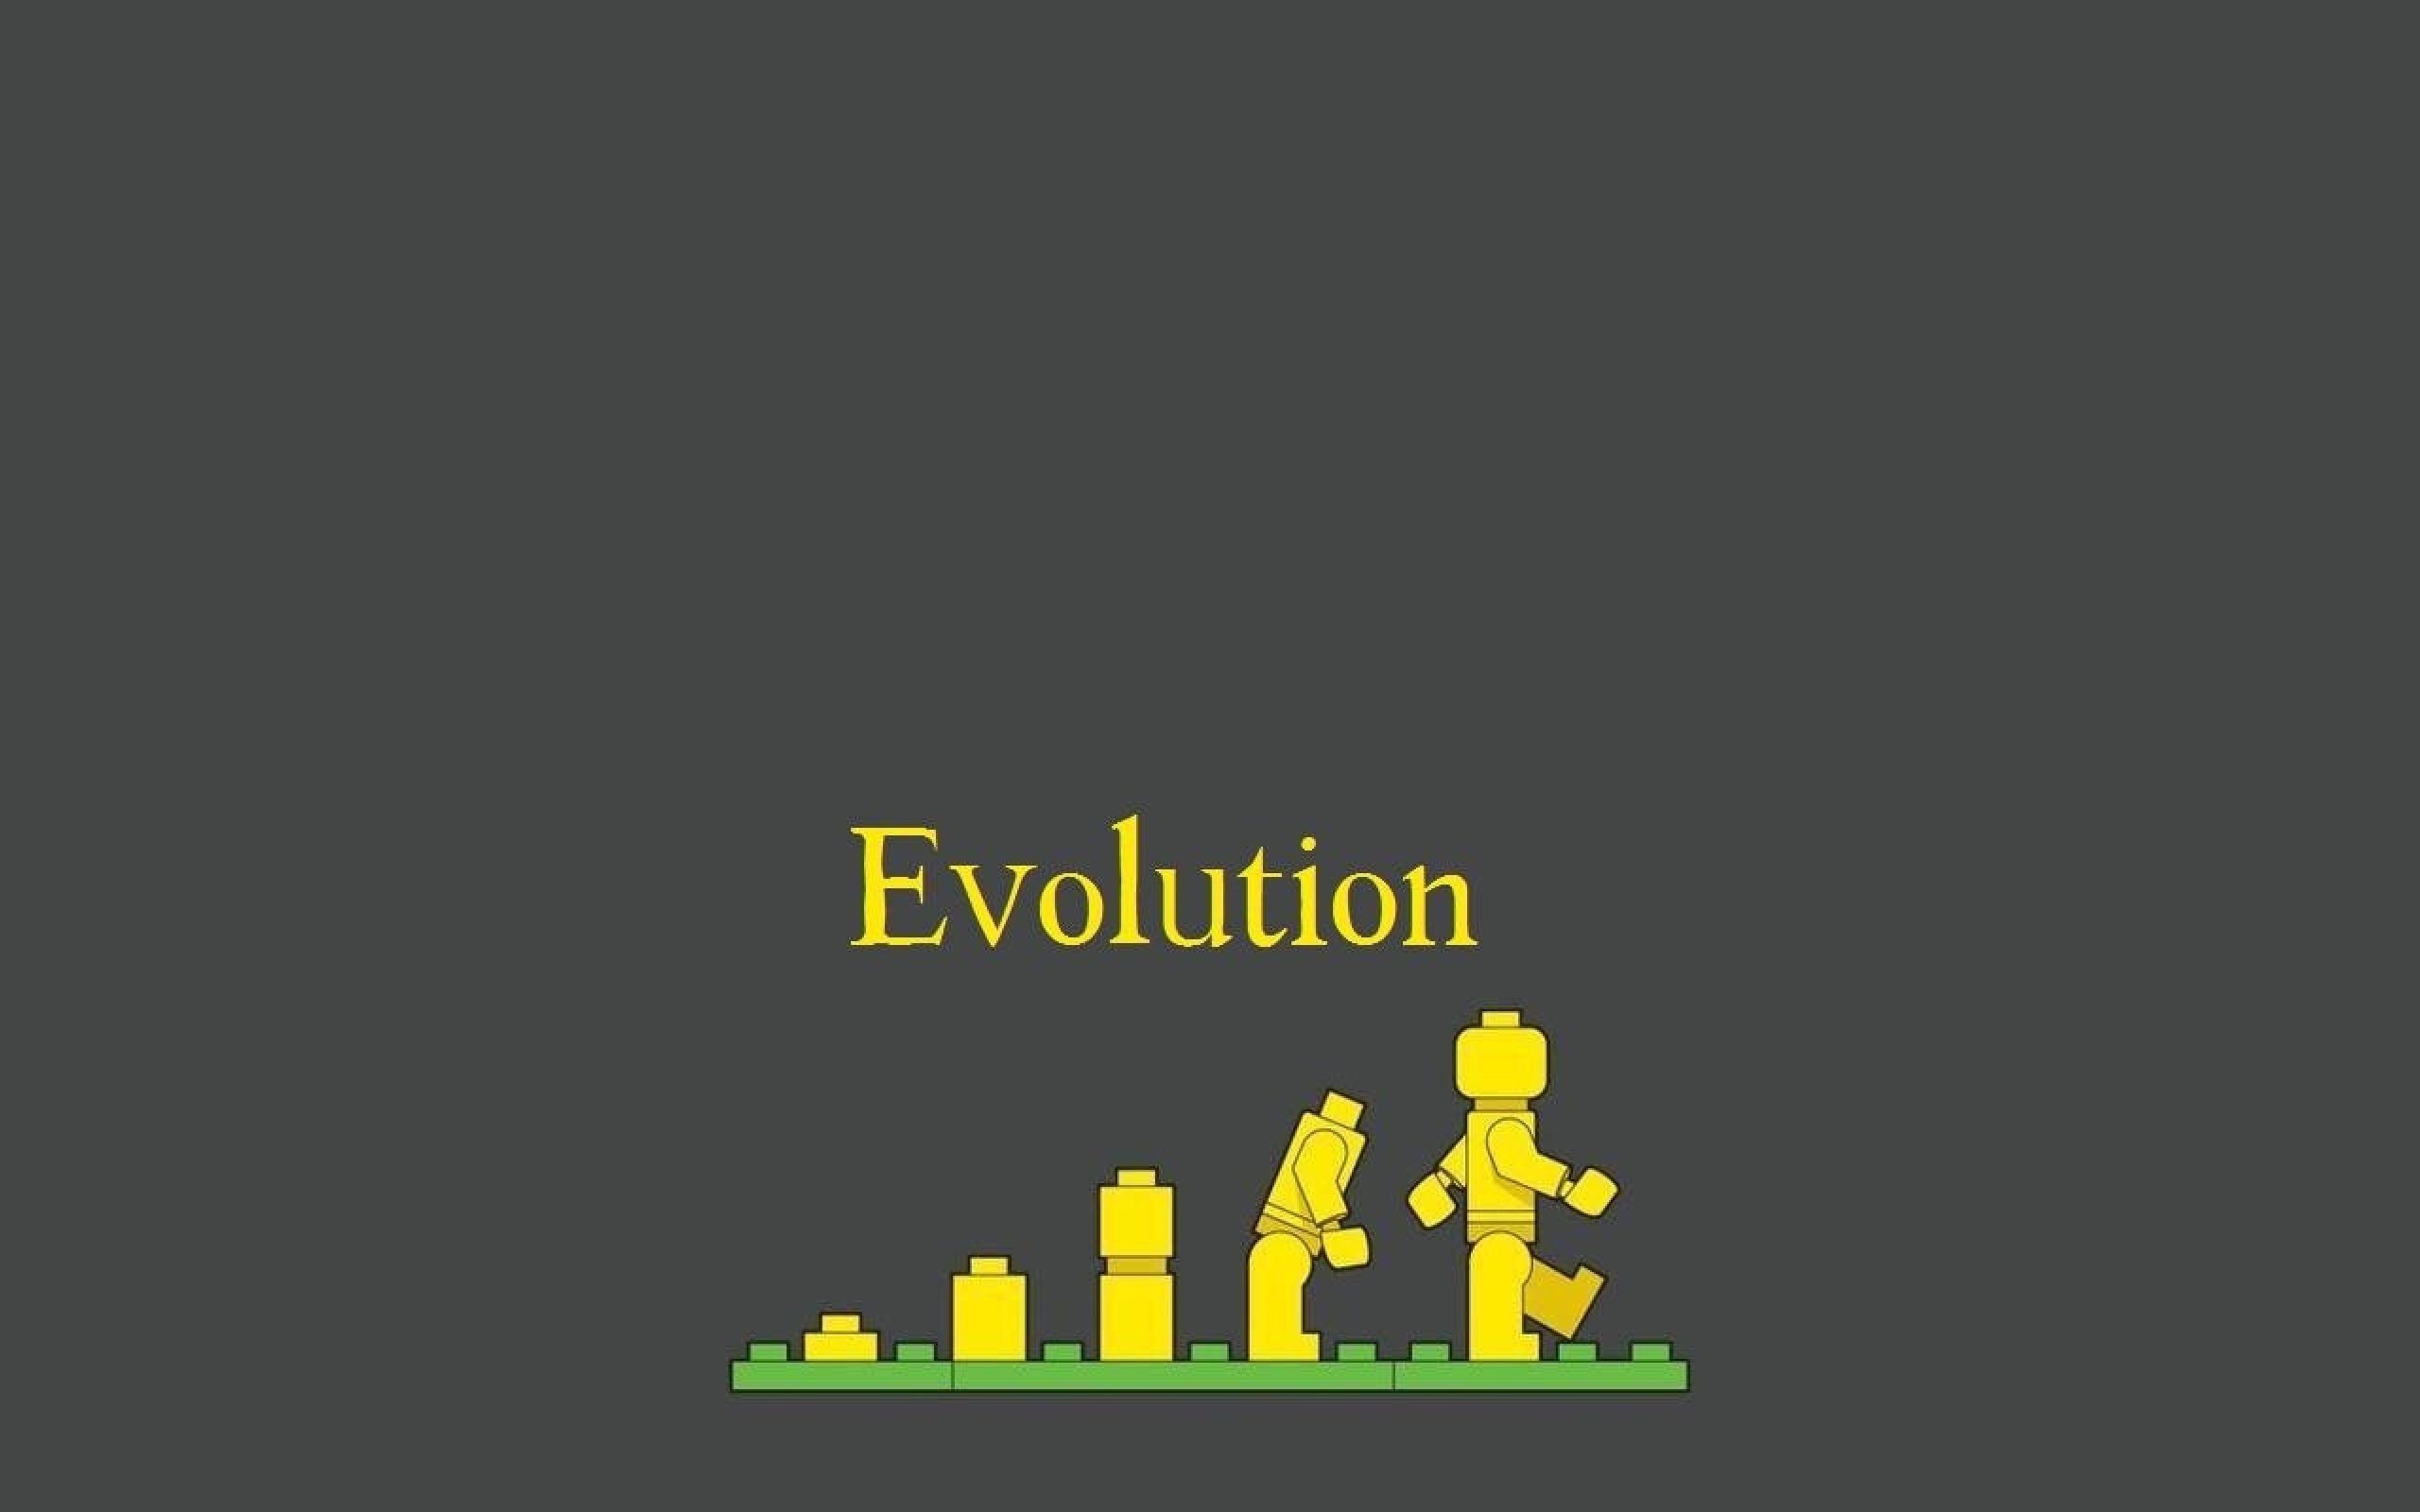 Скачать обои Лего Эволюция на телефон бесплатно